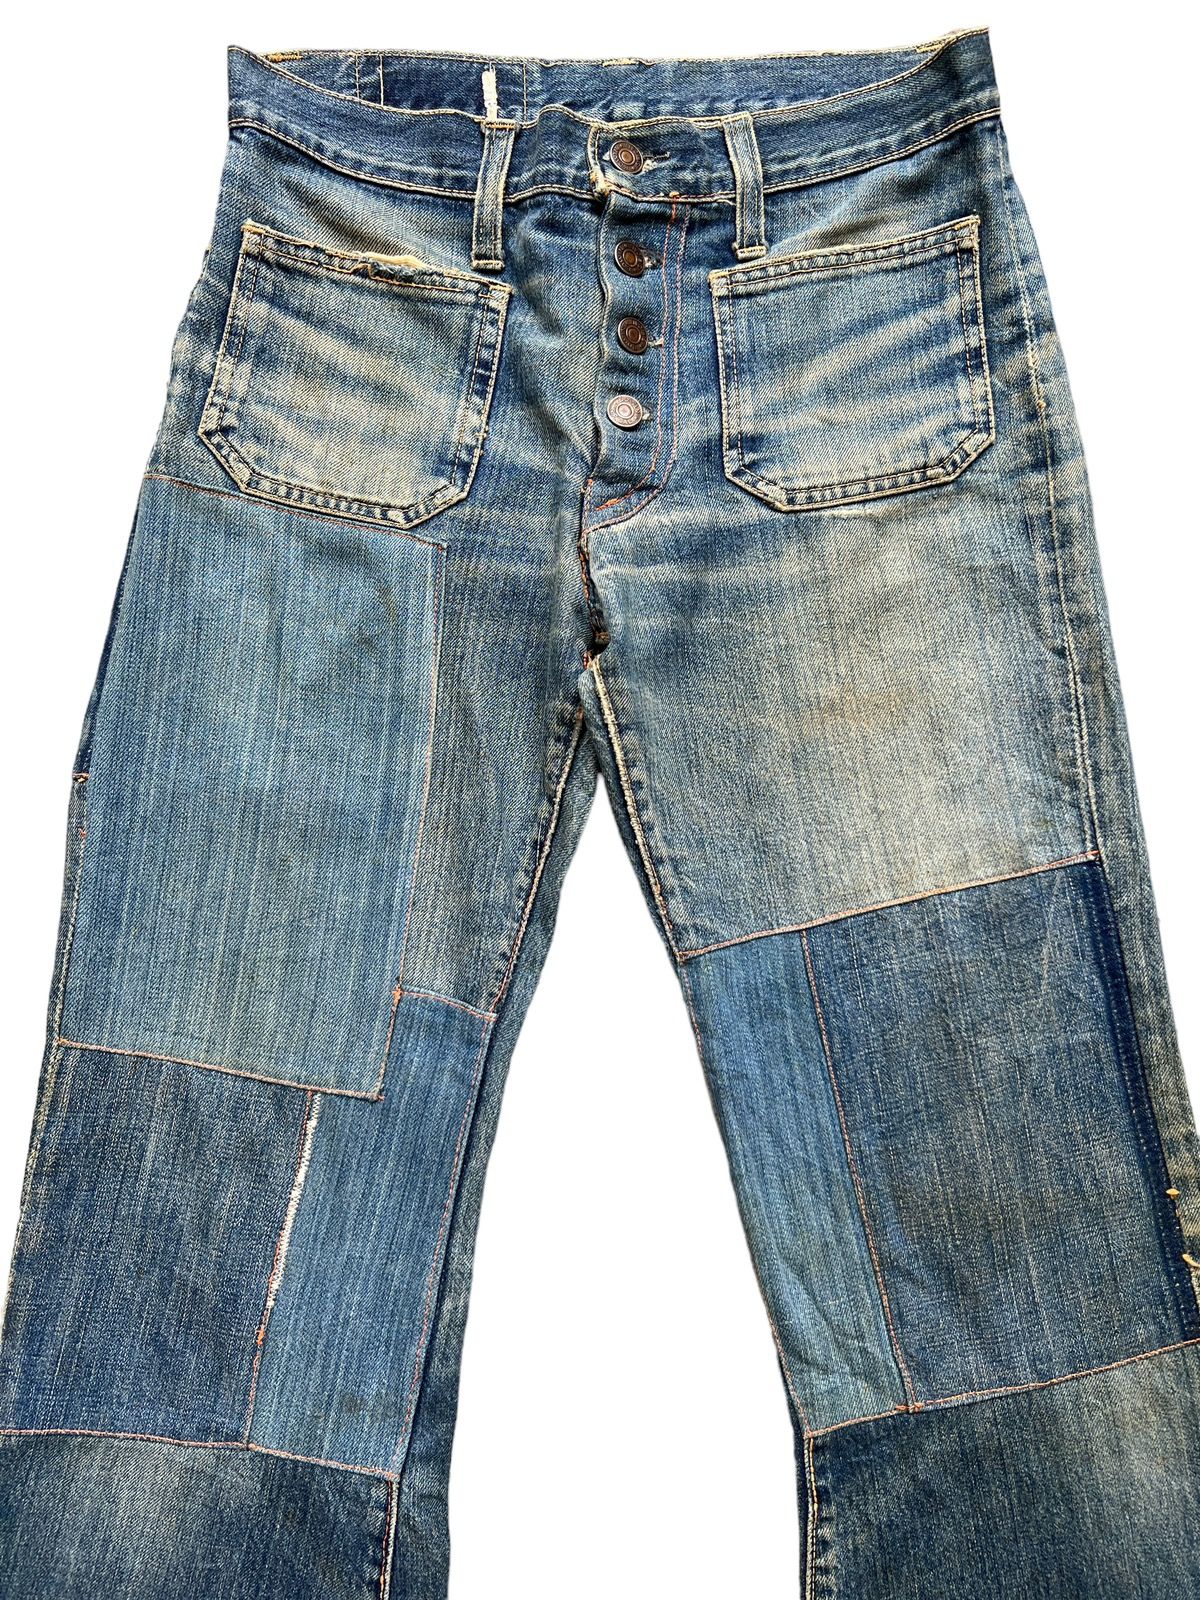 Hype - Vintage 80s Edwin Bushpant Patchwork Distressed Flare Jeans - 4